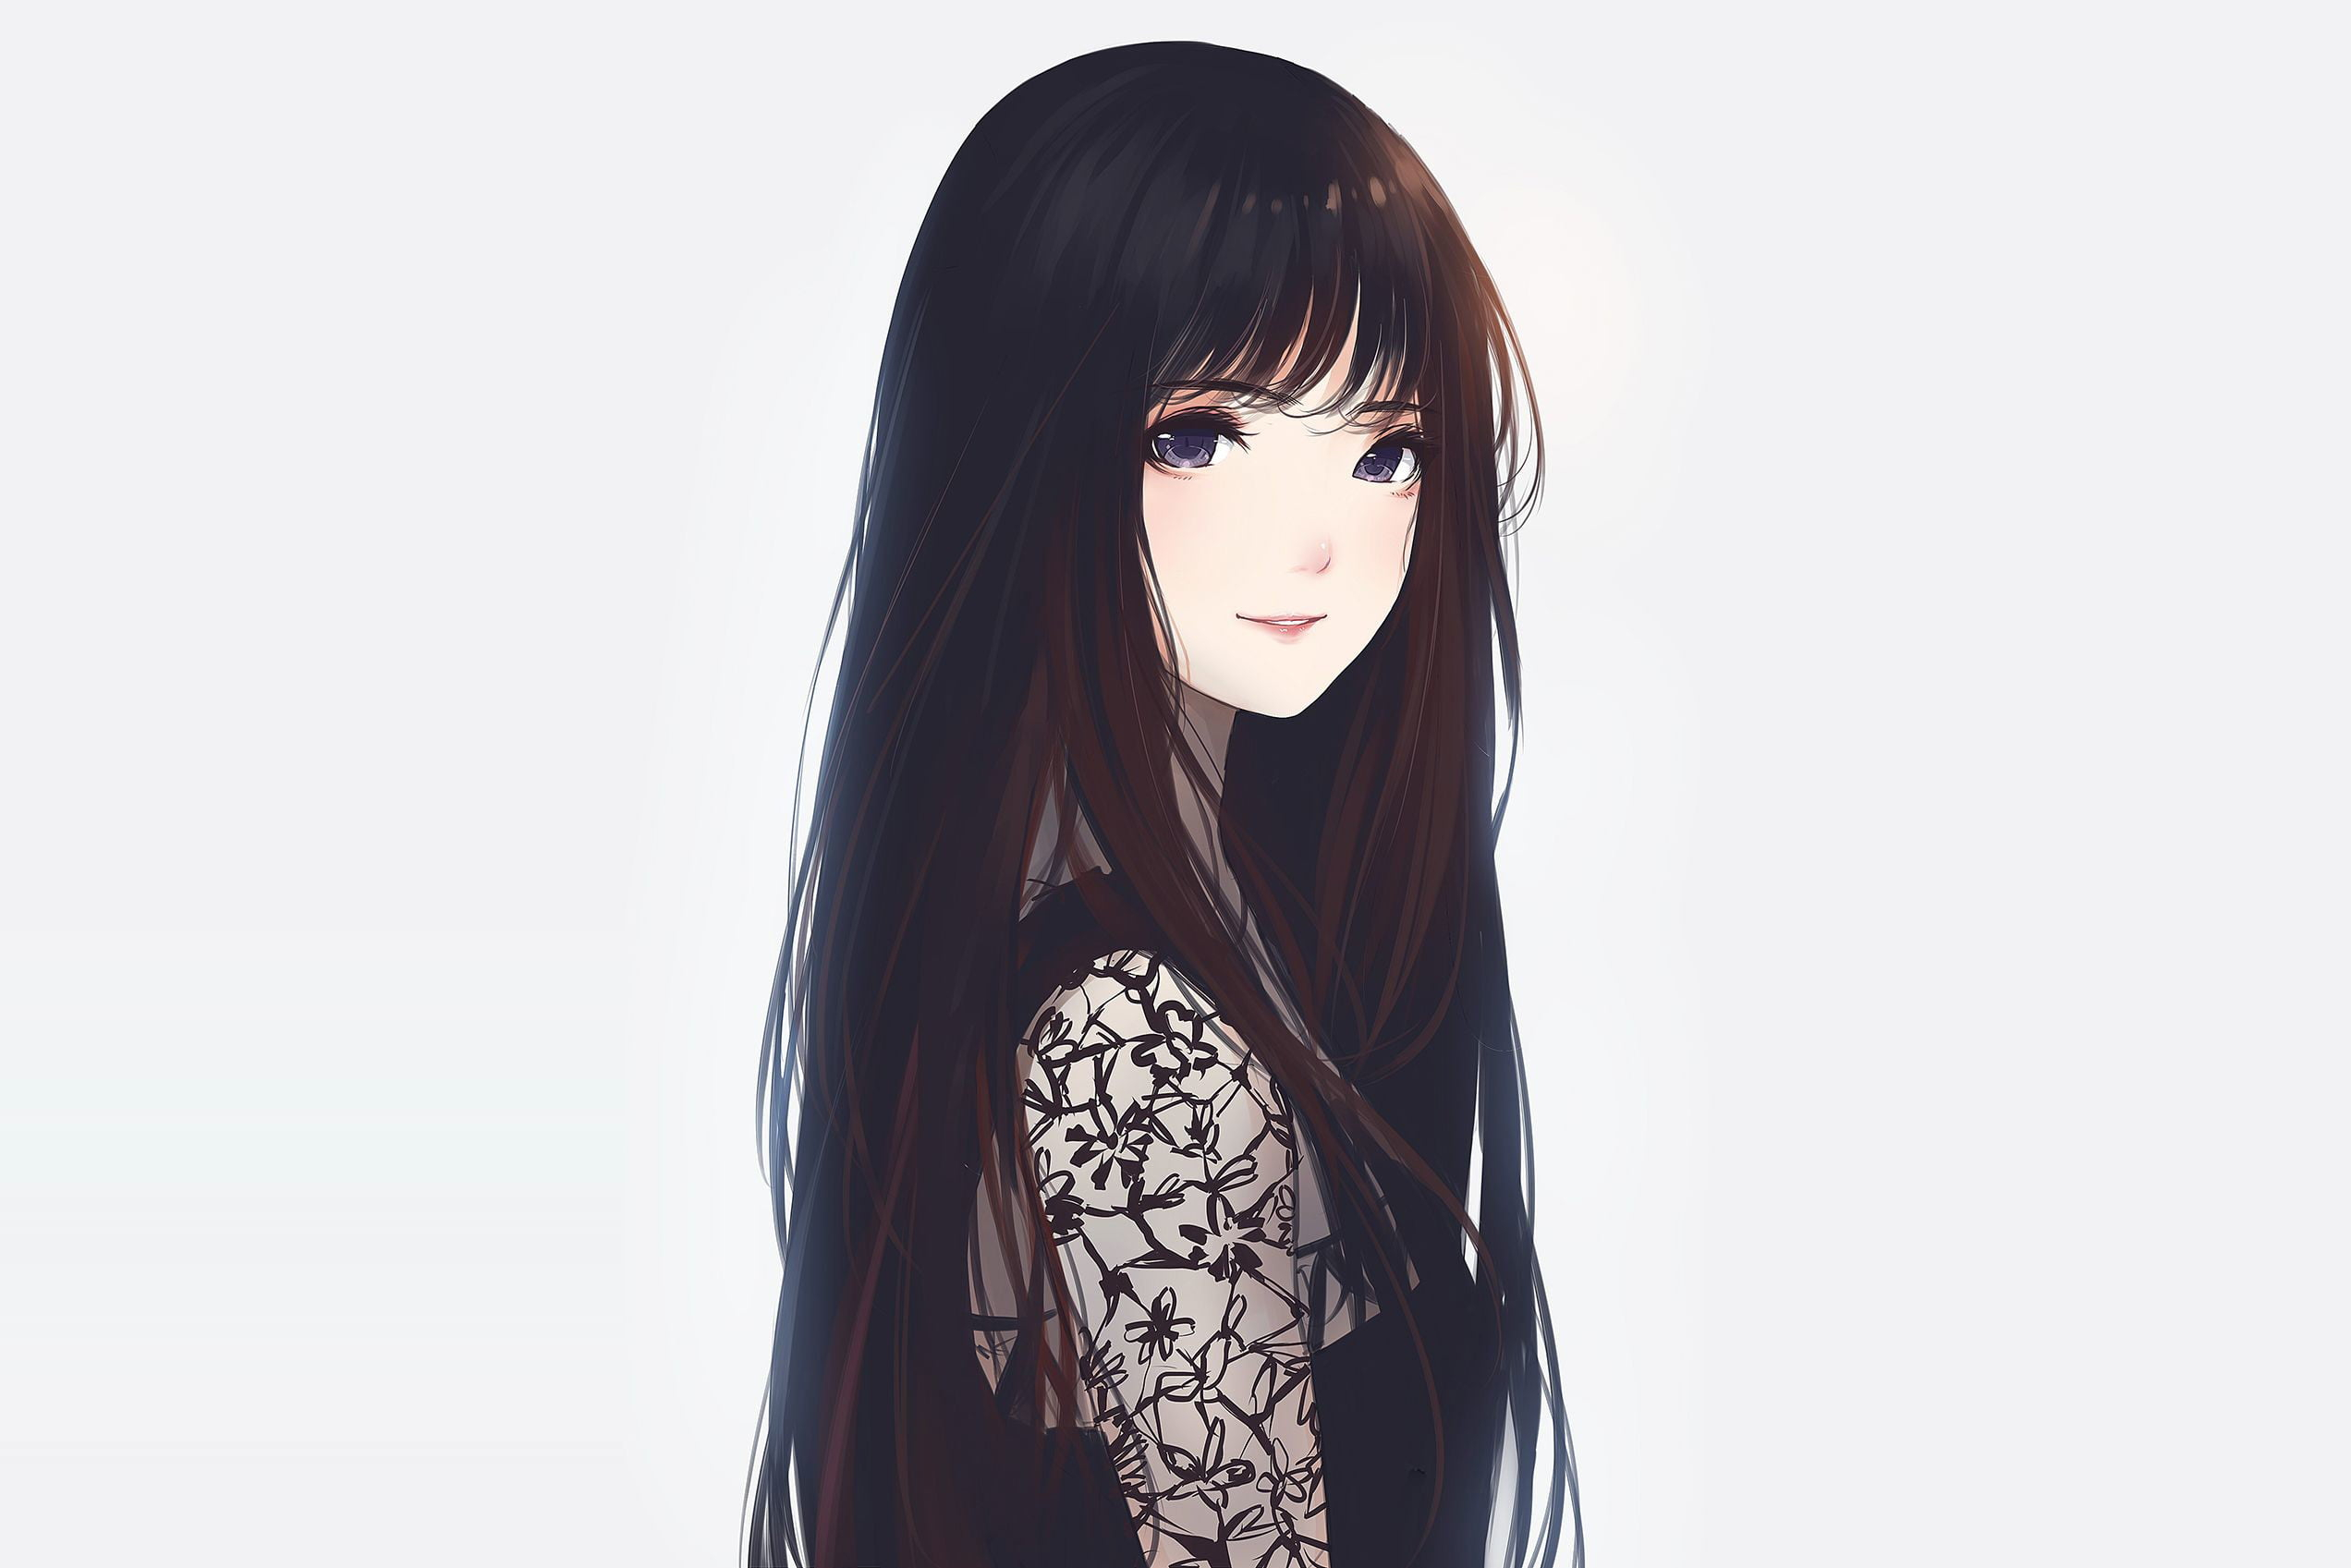 Female anime character wearing black dress illustration, anime girls wallpaper